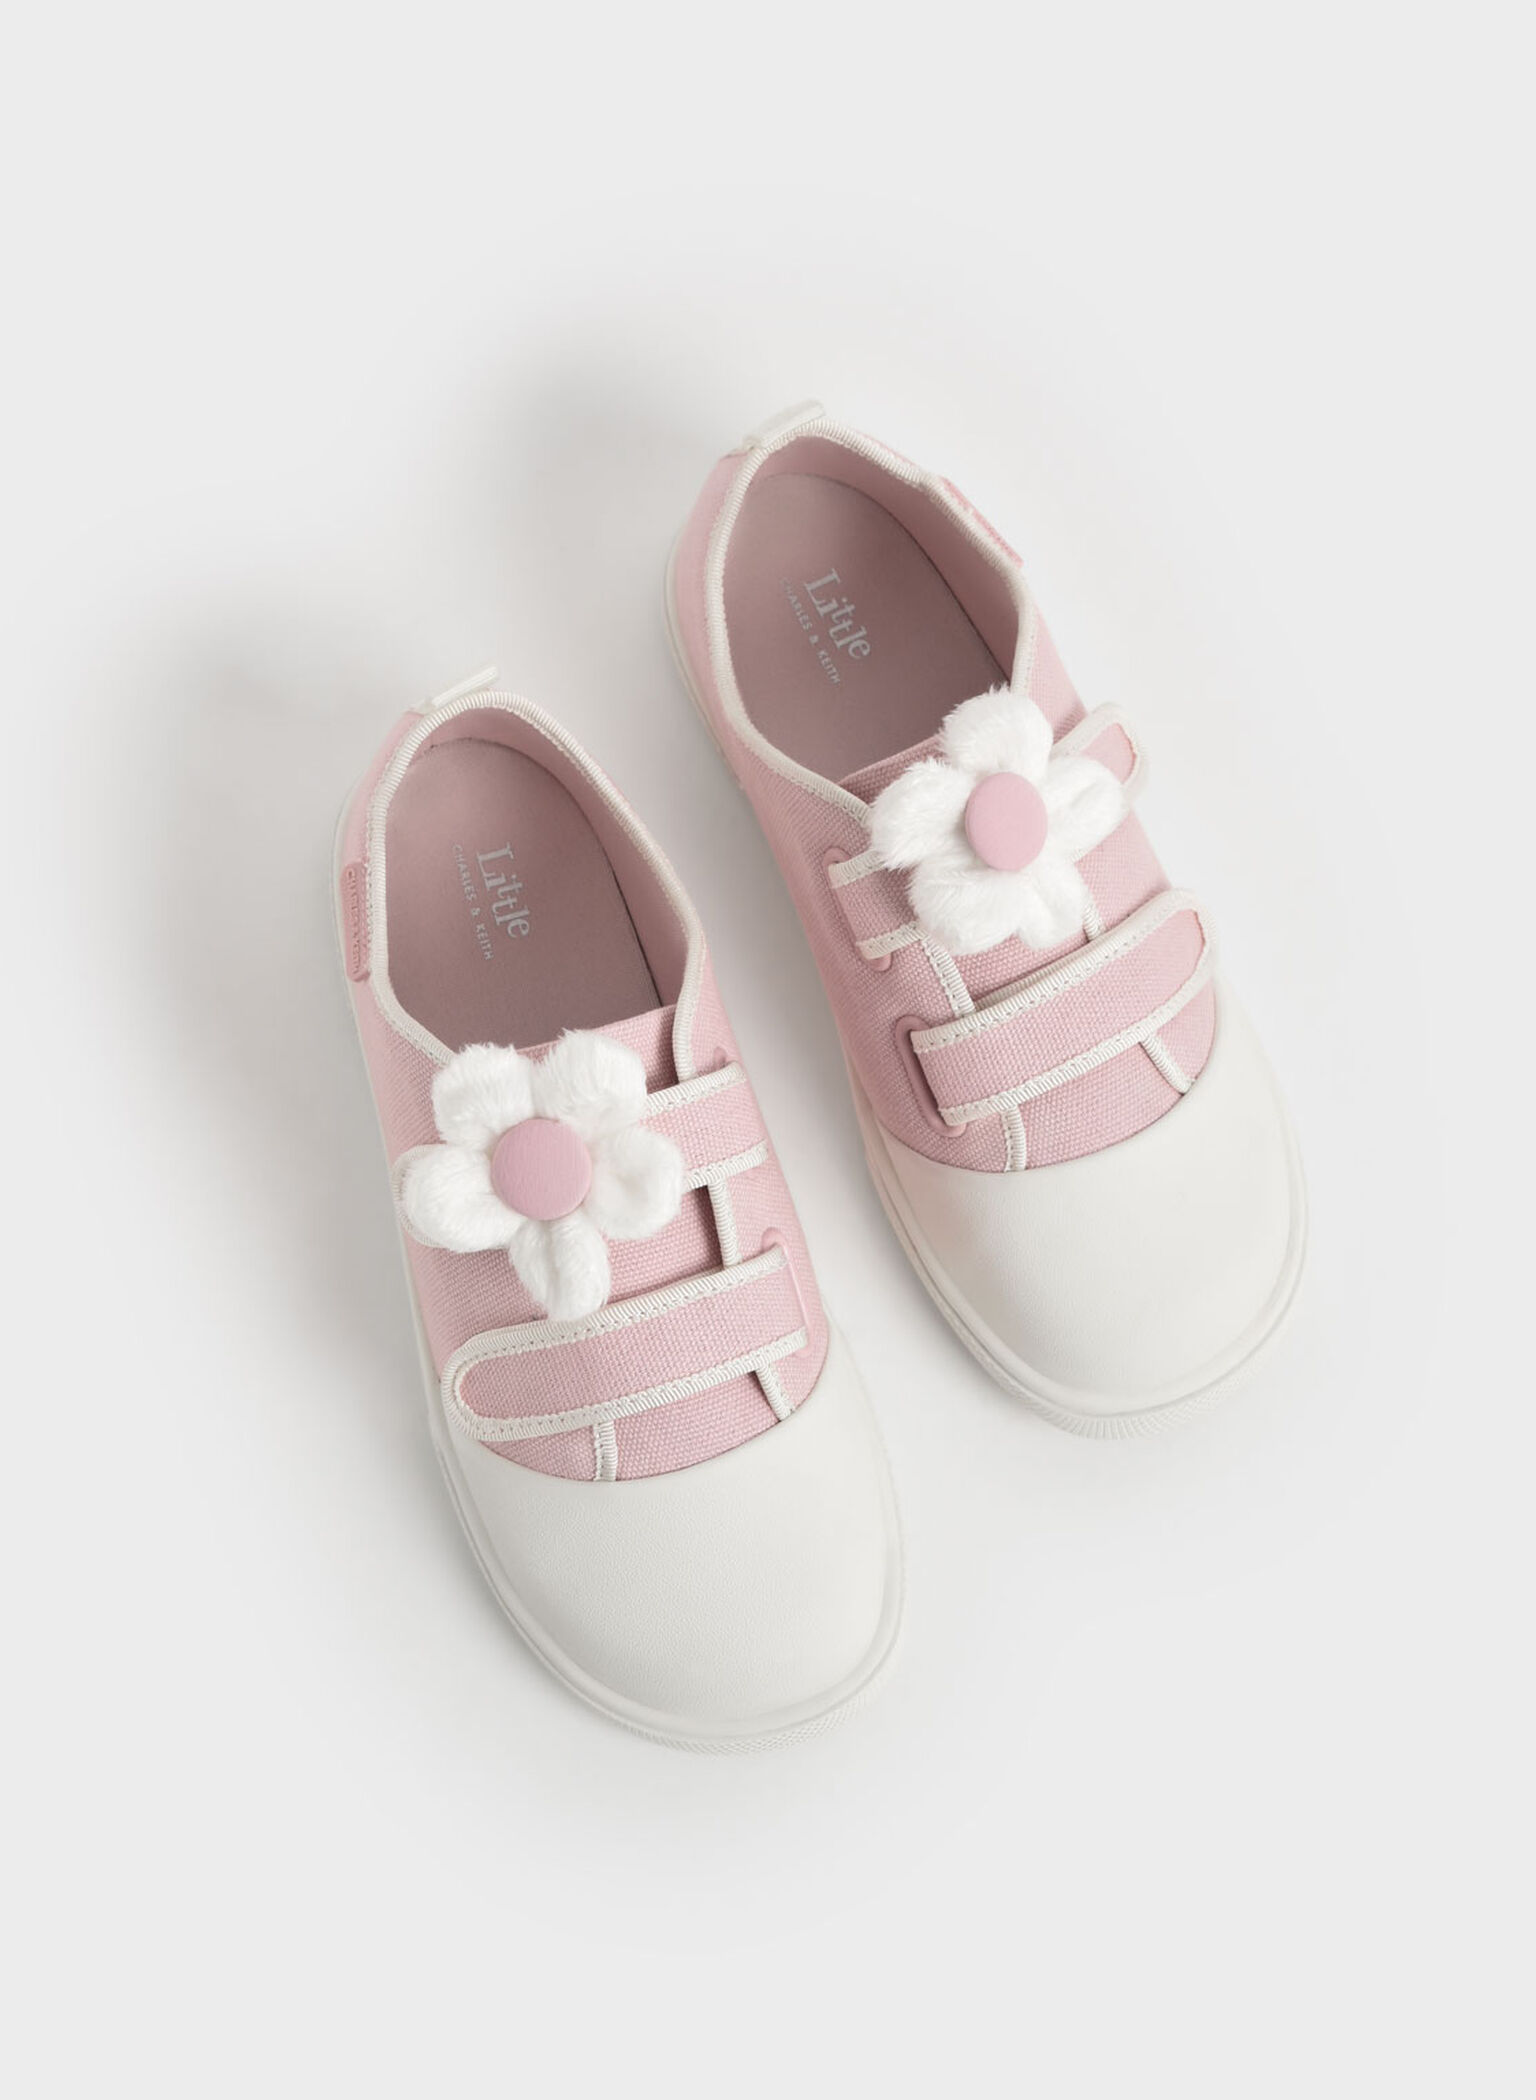 Girls' Flower-Embellished Canvas Sneakers, Light Pink, hi-res